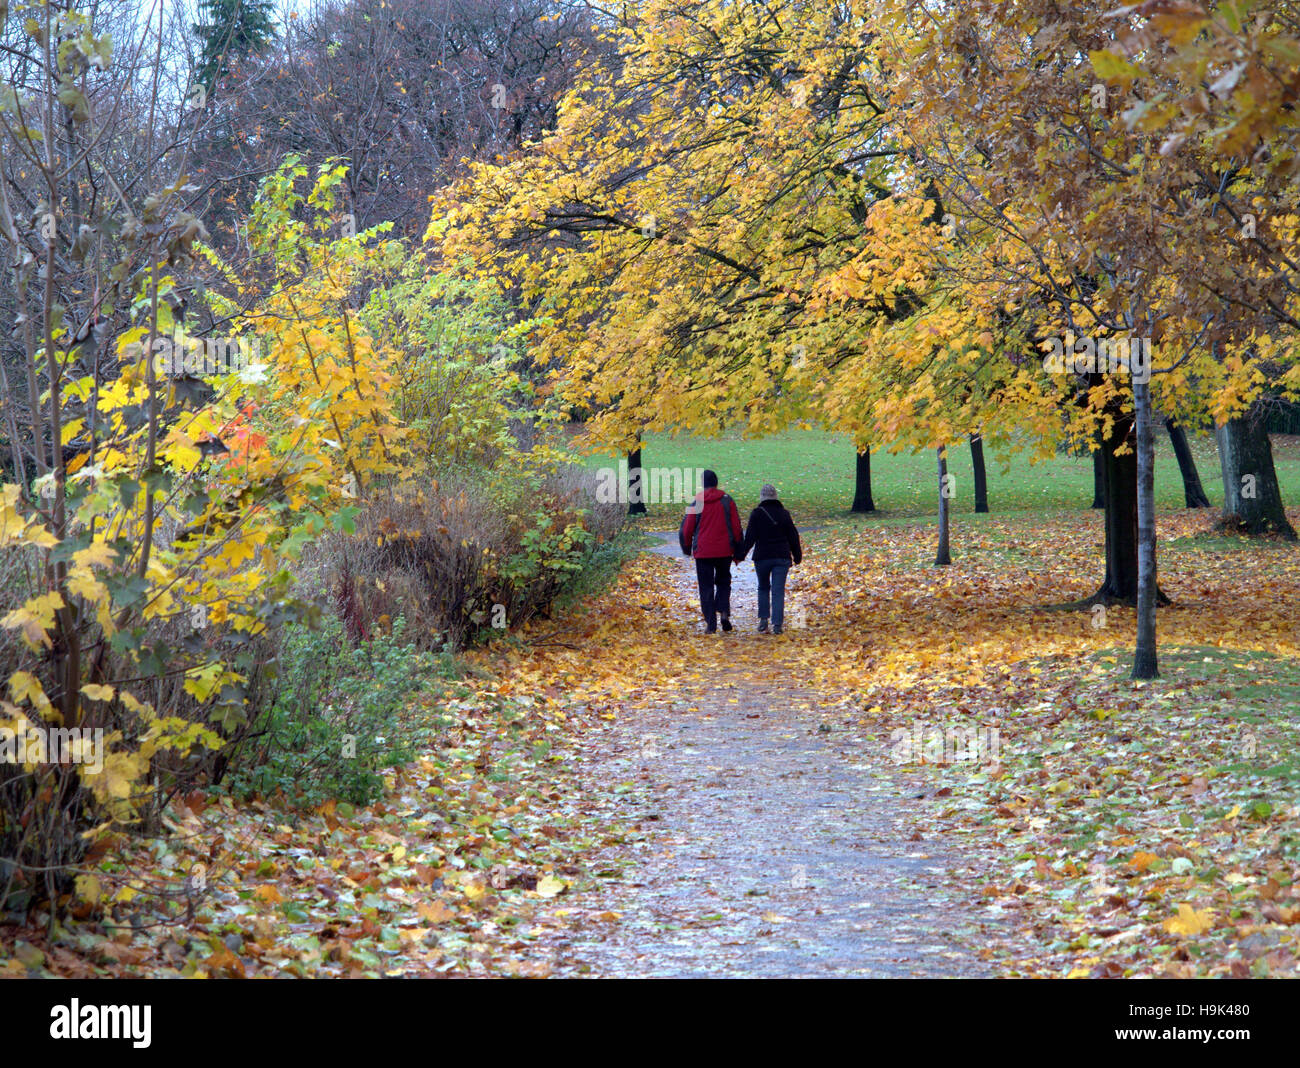 Scène parc de Glasgow couple holding hands and walking on path ou road Banque D'Images